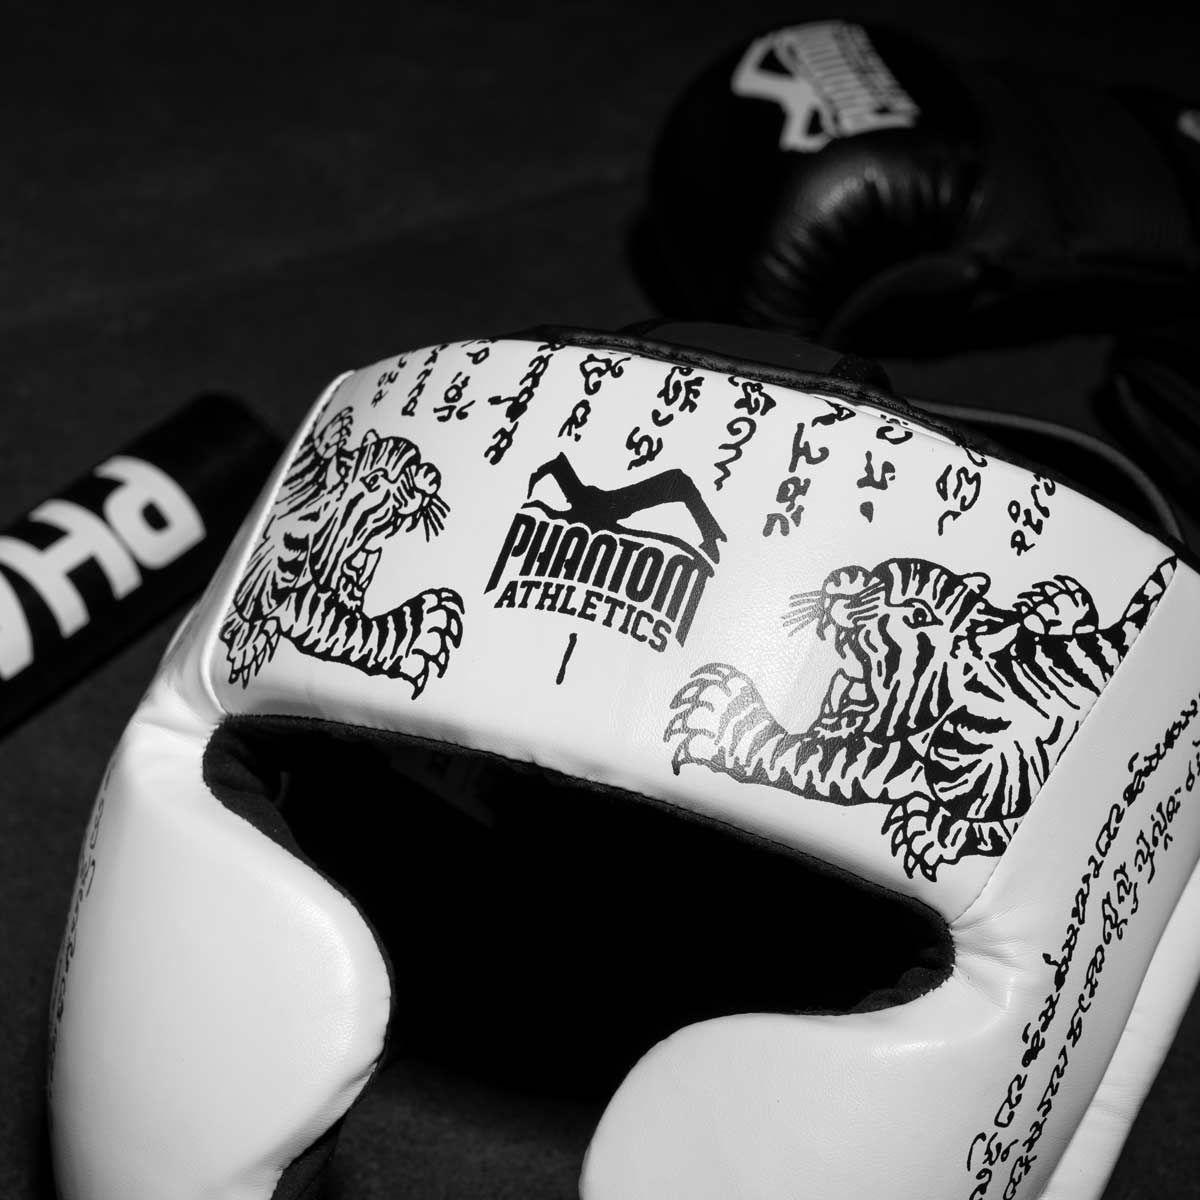 Phantom Muay Thai Kopfschutz für Thaiboxen und MMA Sparring, Wettkampf und Training. Im traditionellen Sak Yant Design und der Farbe Weiß.